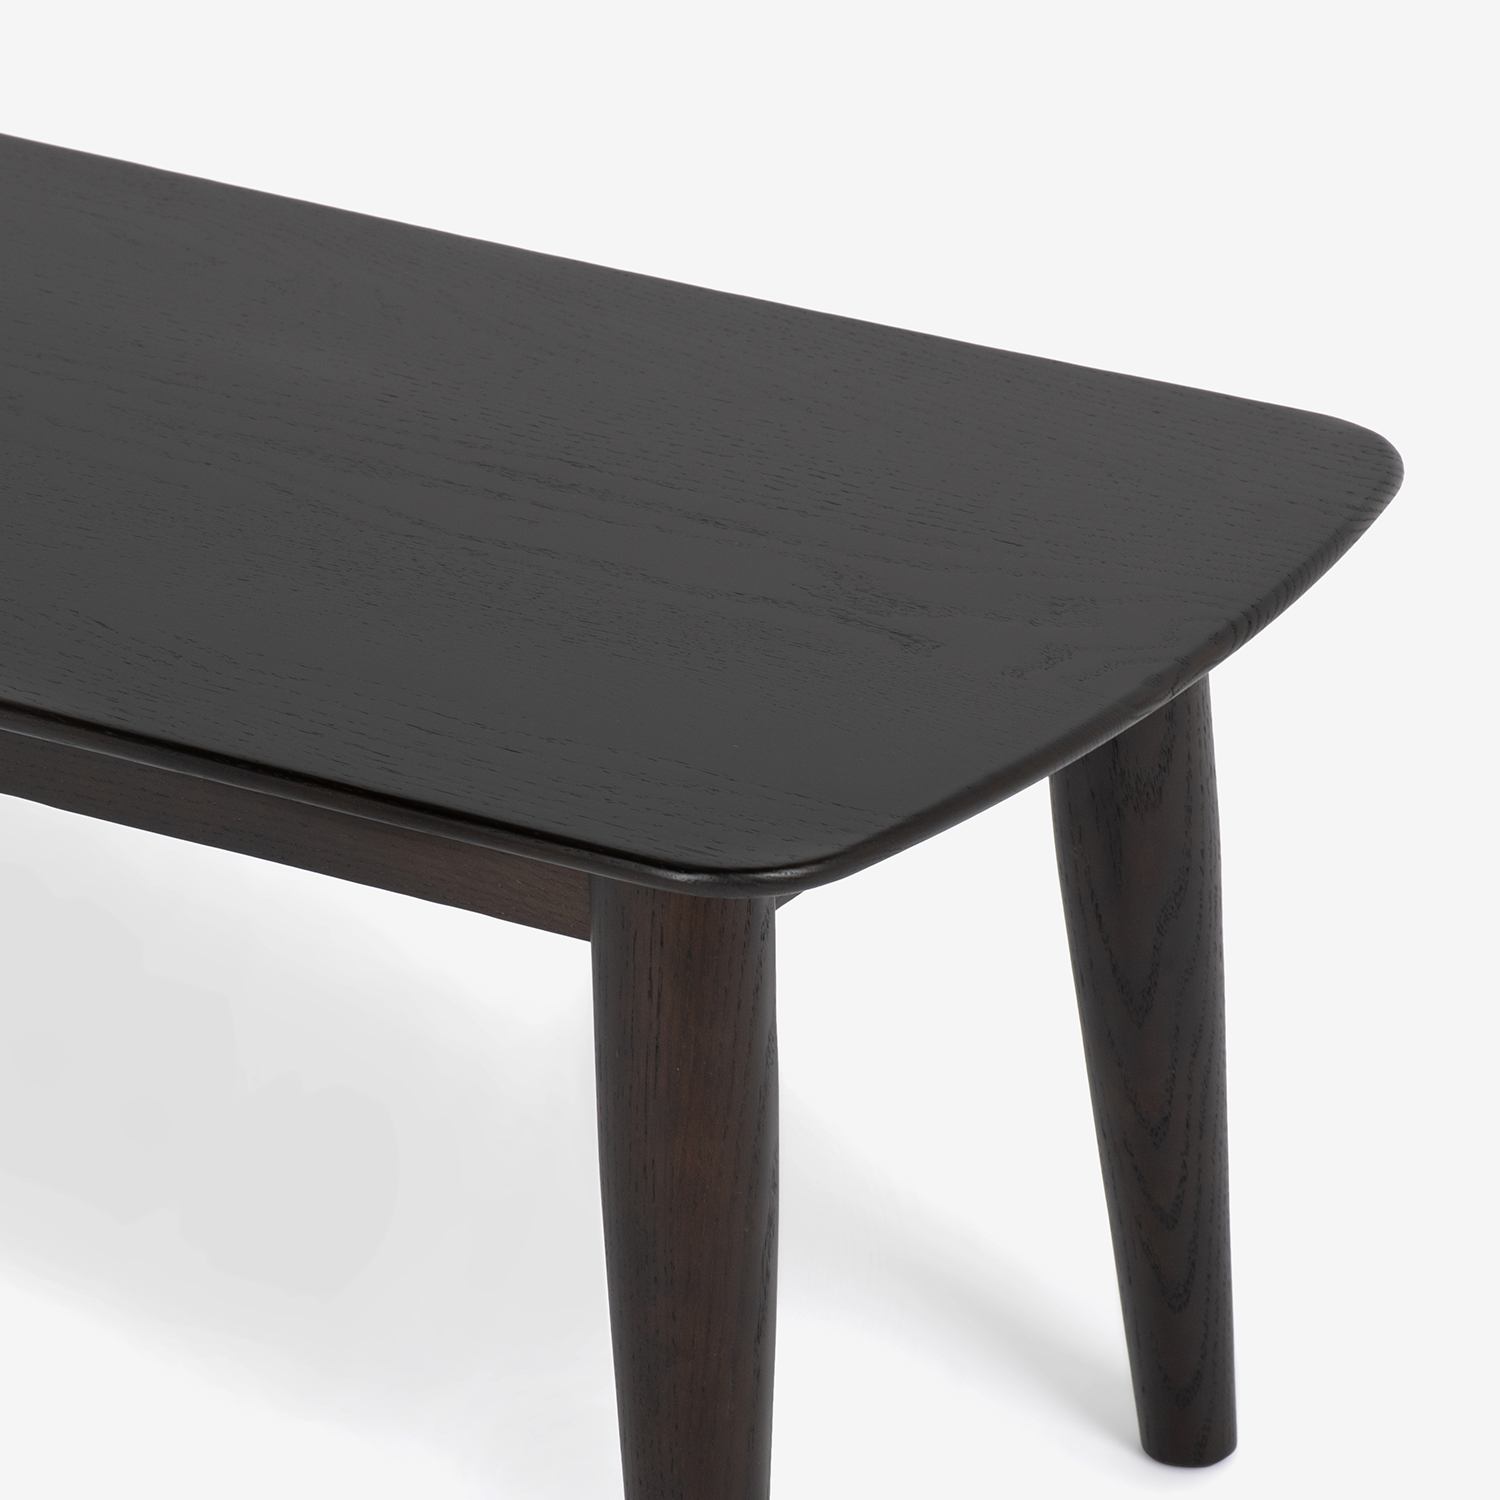 センターテーブル「シネマ2」レッドオーク材 ダークブラウン色 全3サイズ